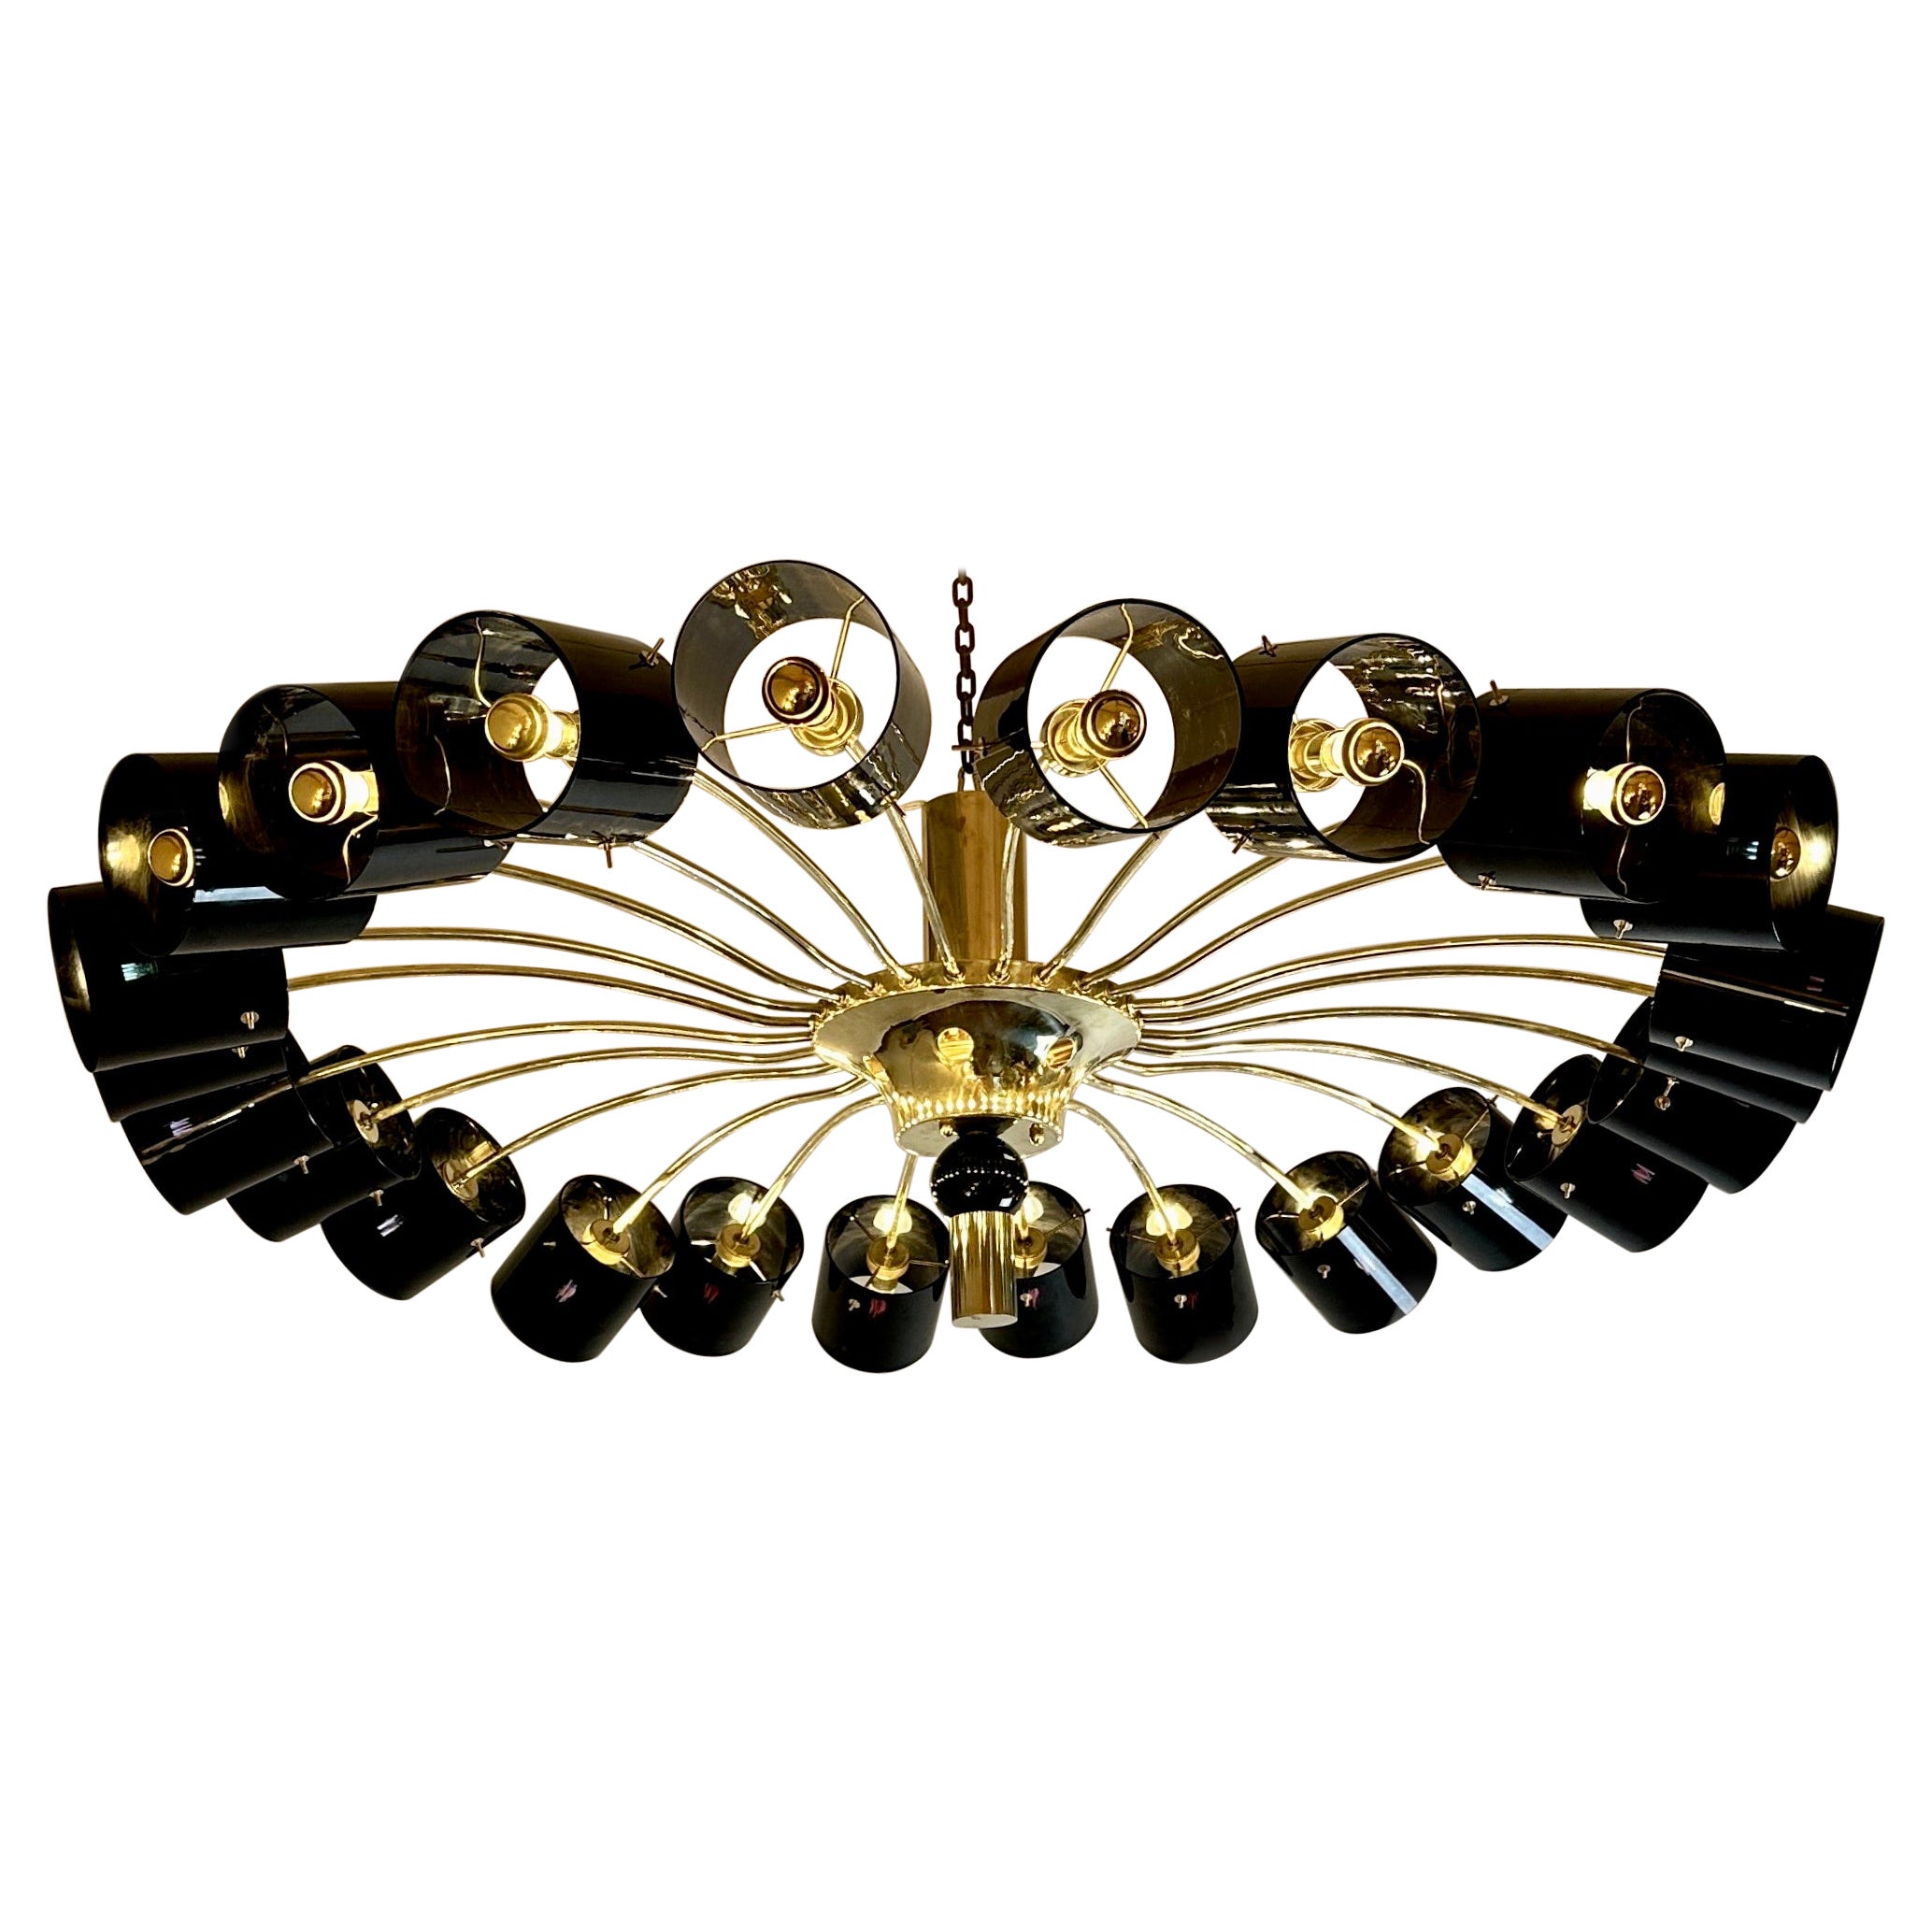 Fin du 20e siècle, laiton rond avec diffuseurs de lumière en verre de Murano noir, montage encastré